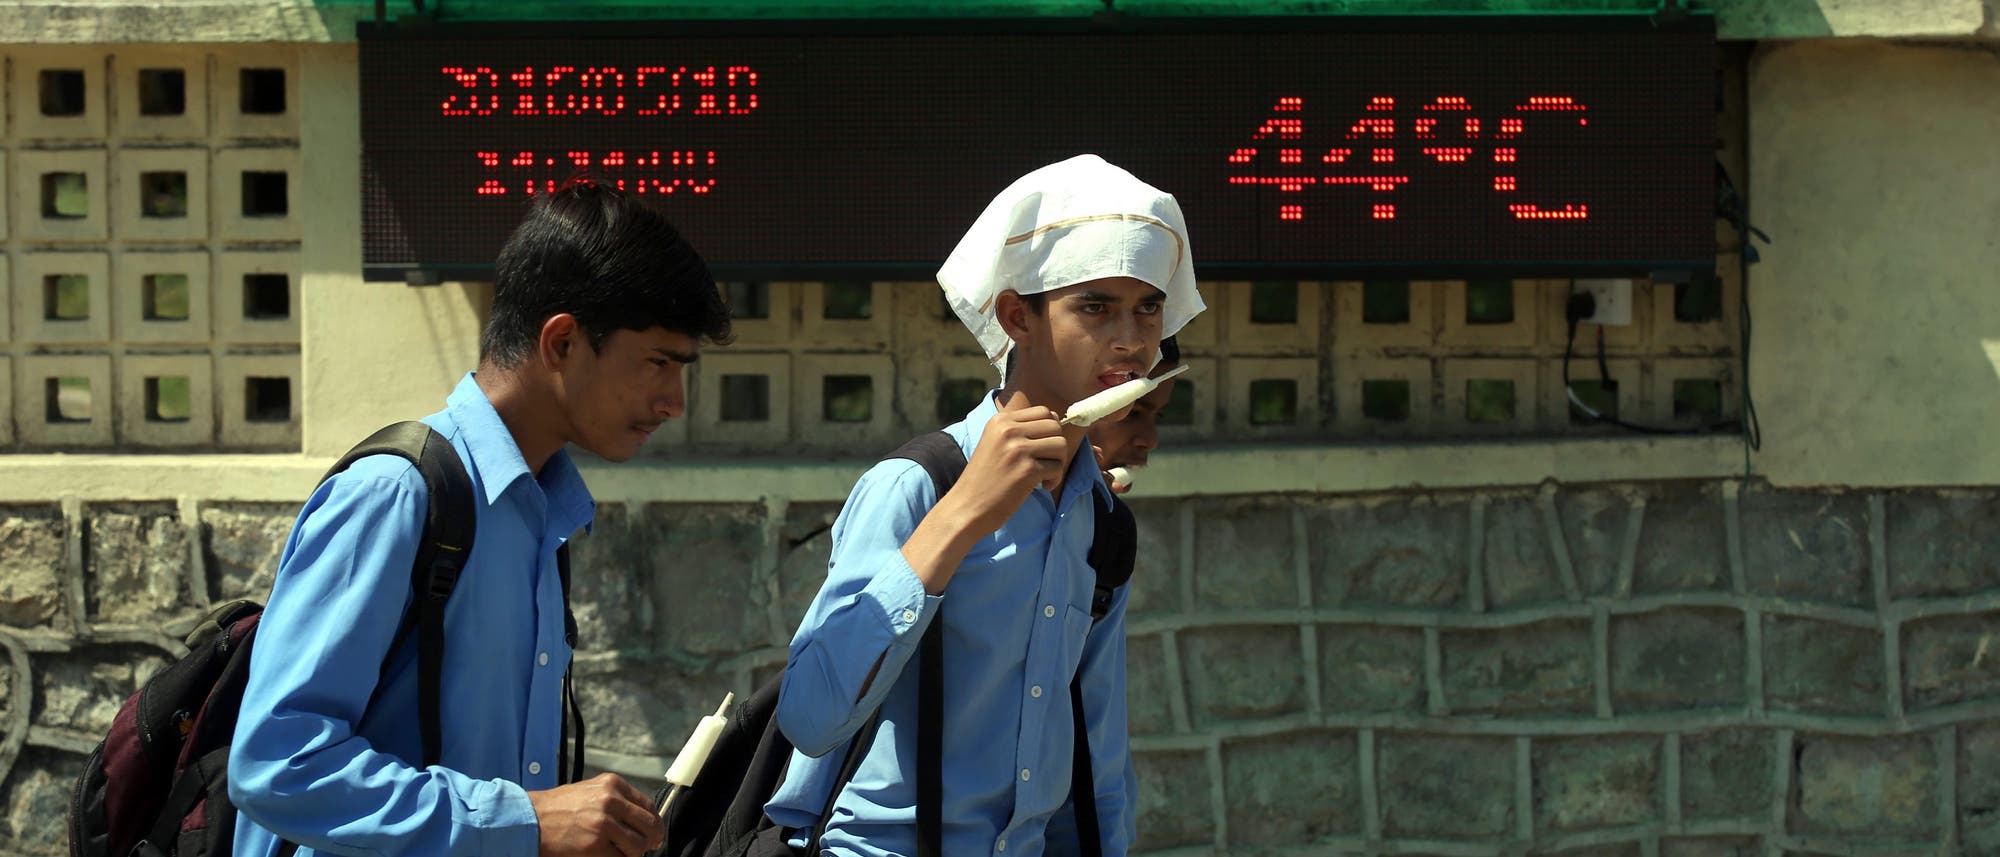 Indische Schüler essen Eis vor einer Anzeigetafel, die eine Temperatur von 44 Grad anzeigt.